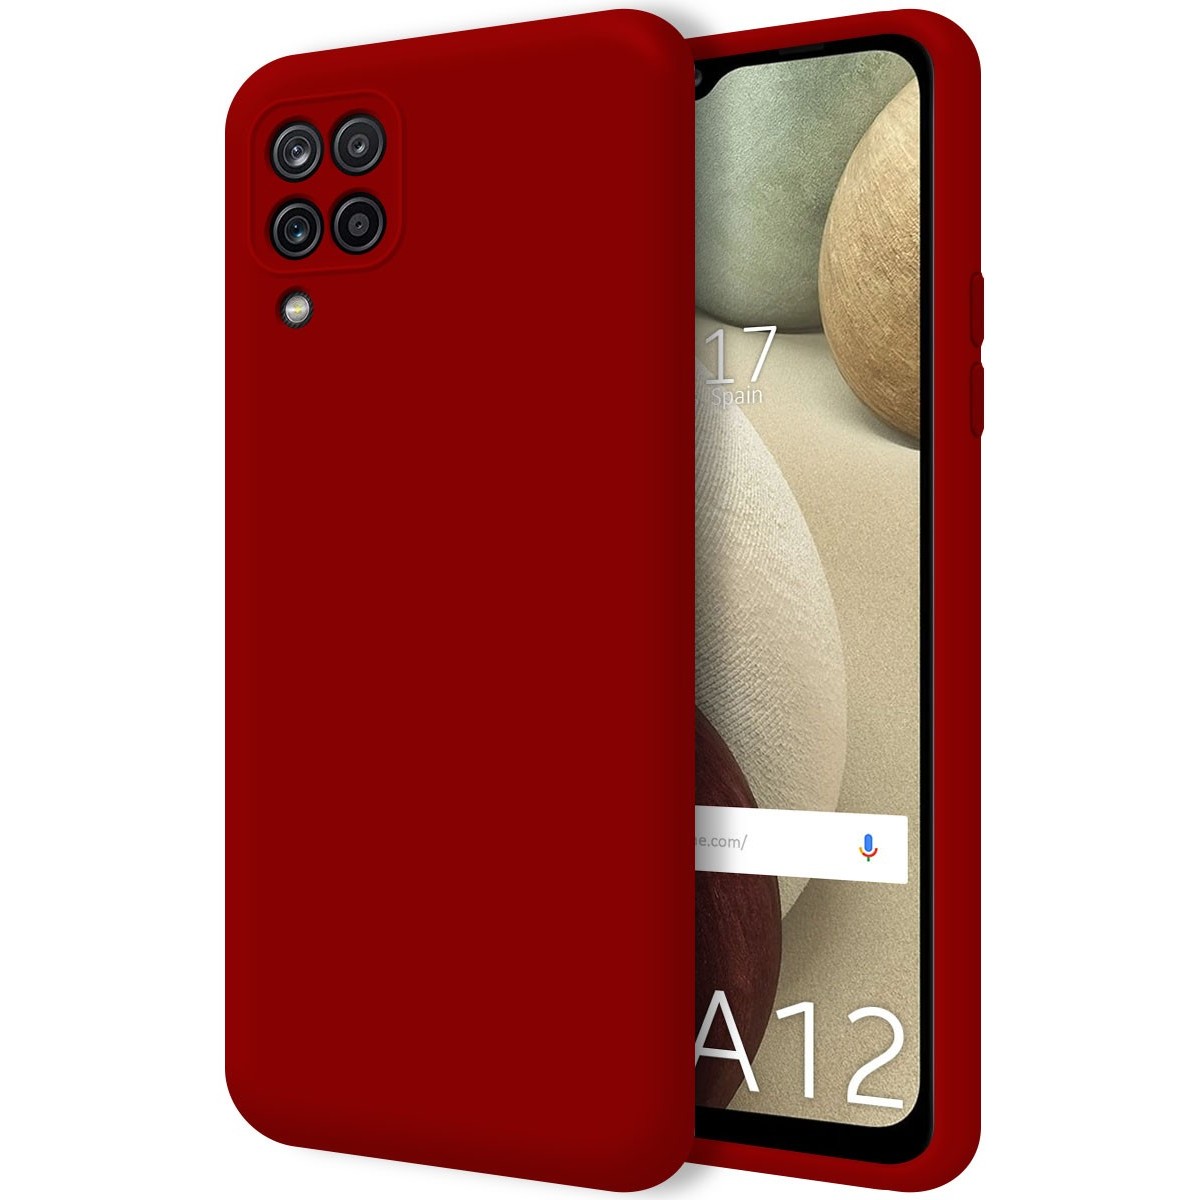 Funda Silicona Líquida Ultra Suave para Samsung Galaxy A12 / M12 color Roja